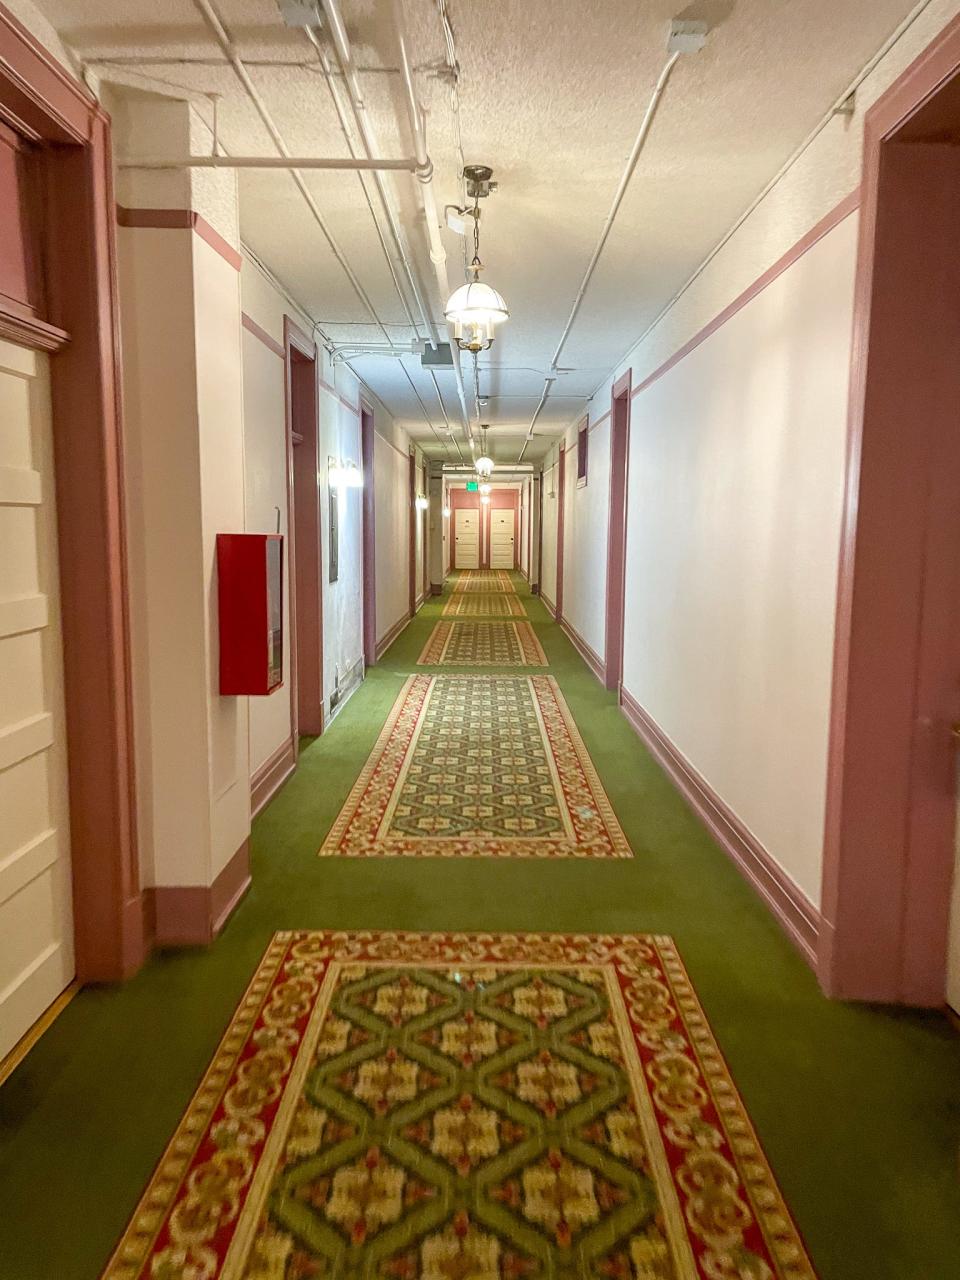 A hallway in the Hotel Colorado.